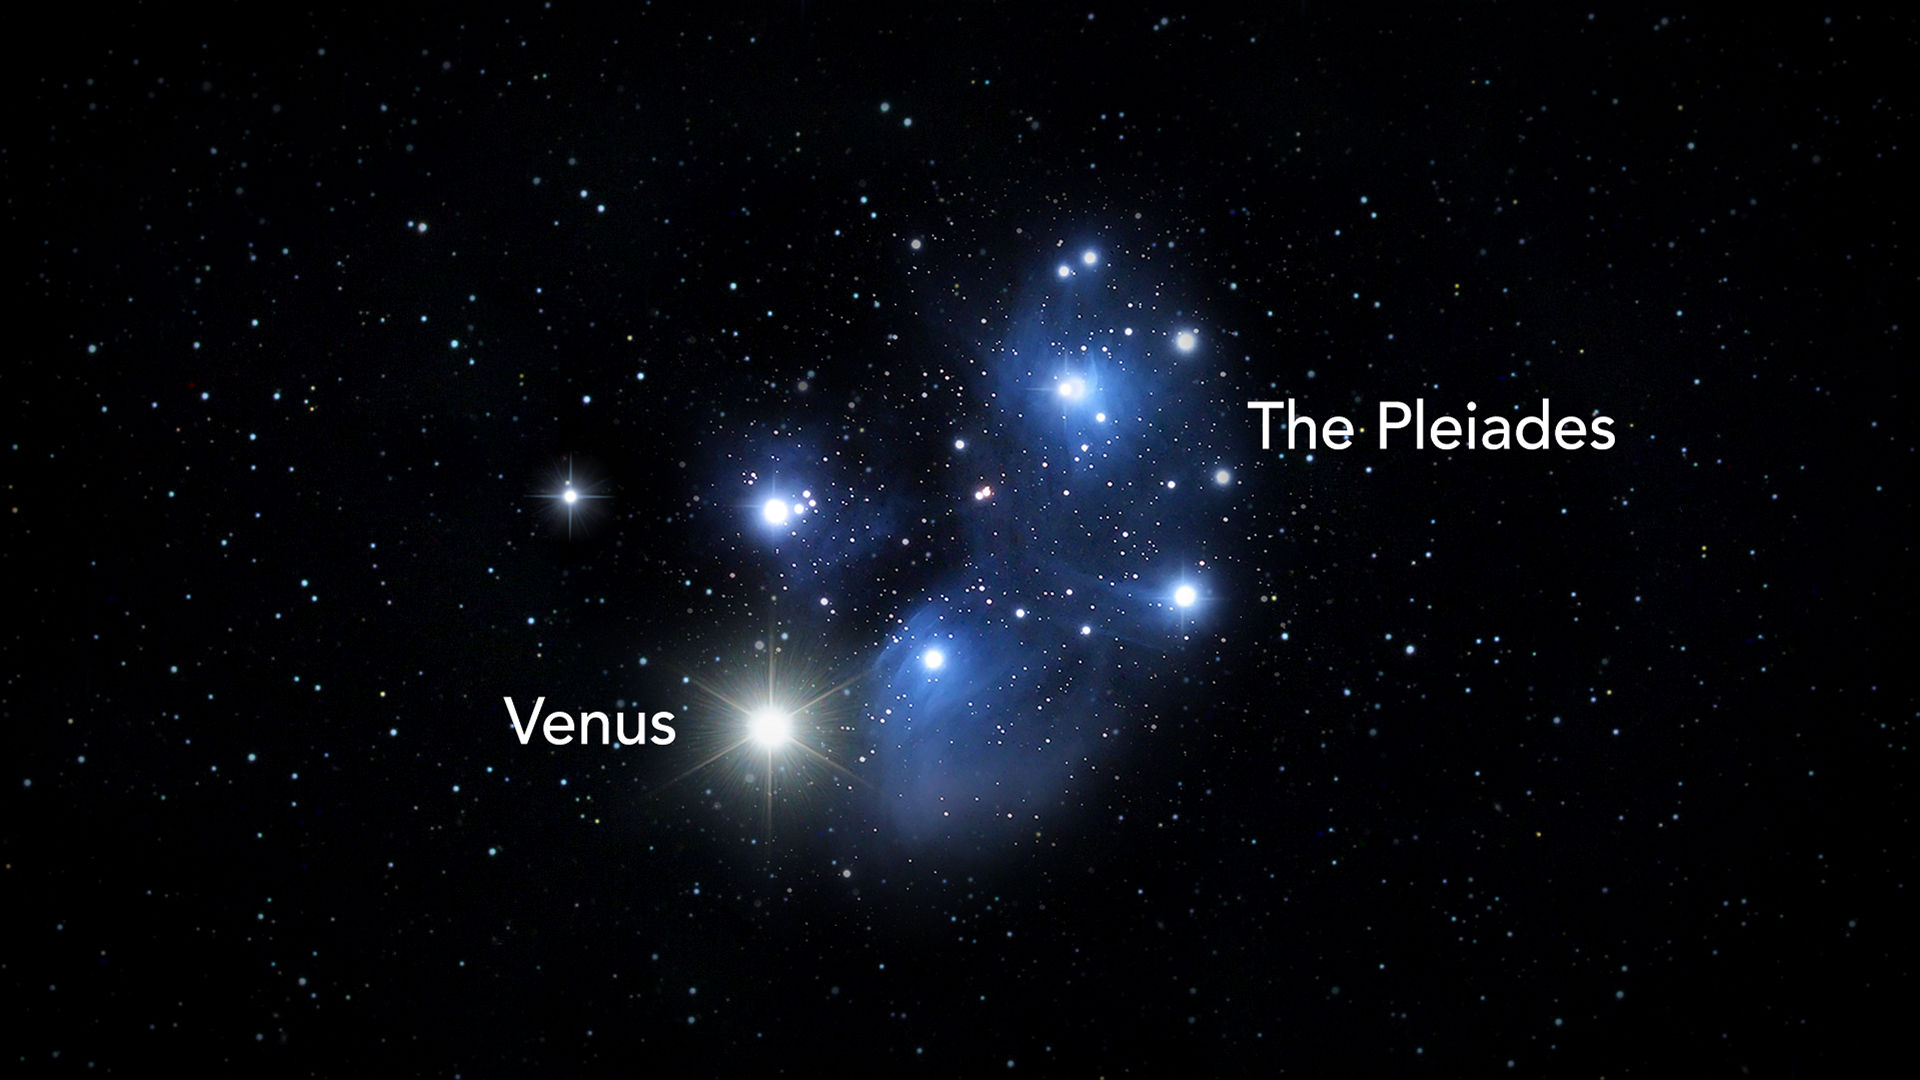 Uma reunião rara de Vênus e as Plêiades no céu noturno